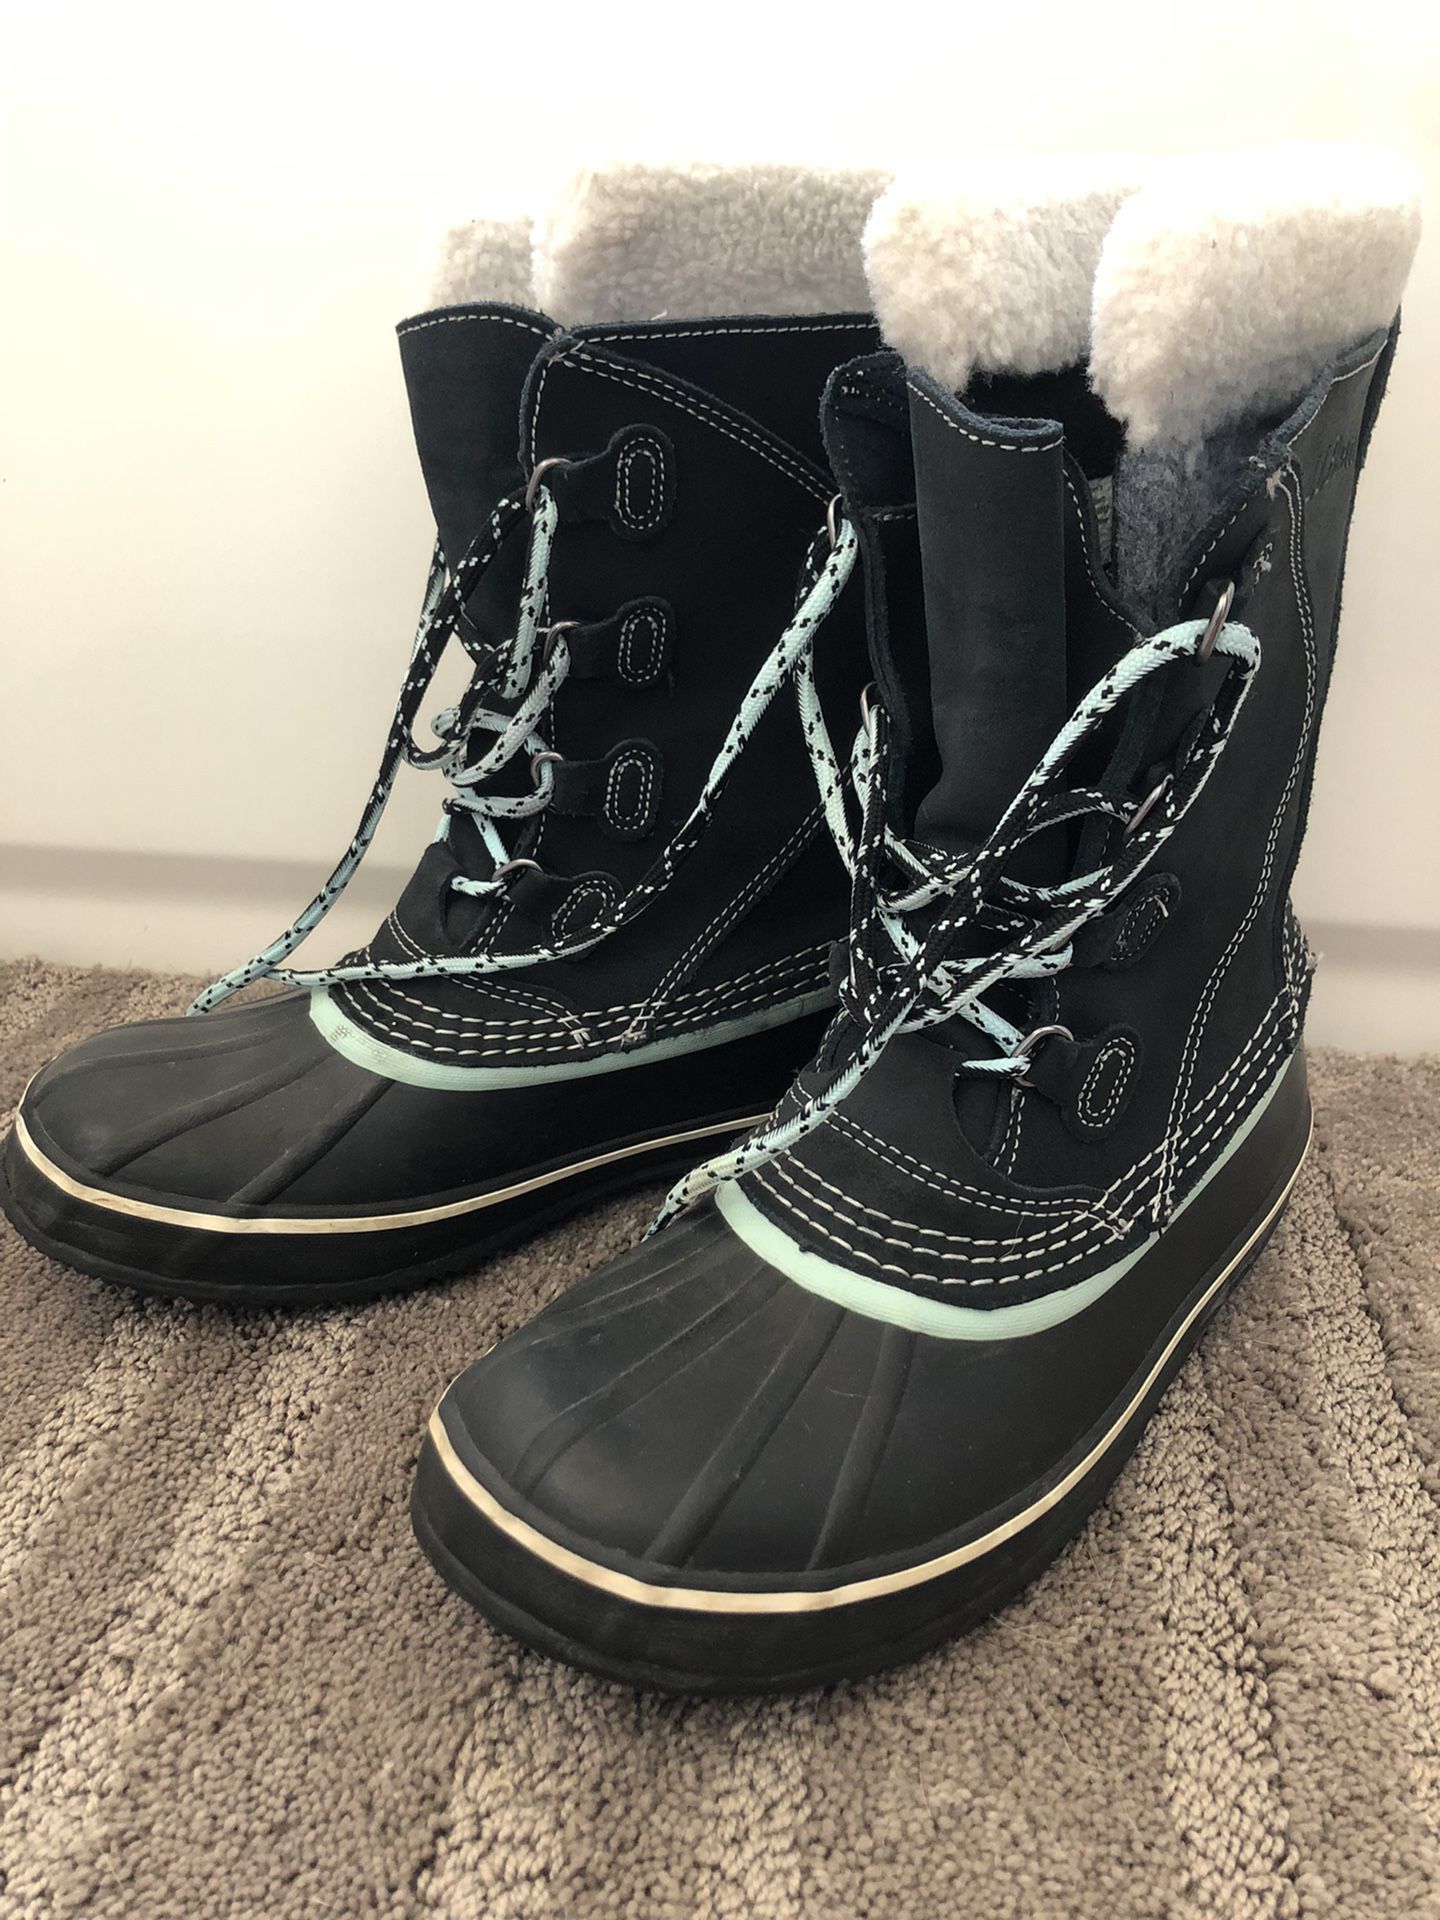 L.L. Bean Snow Boots 